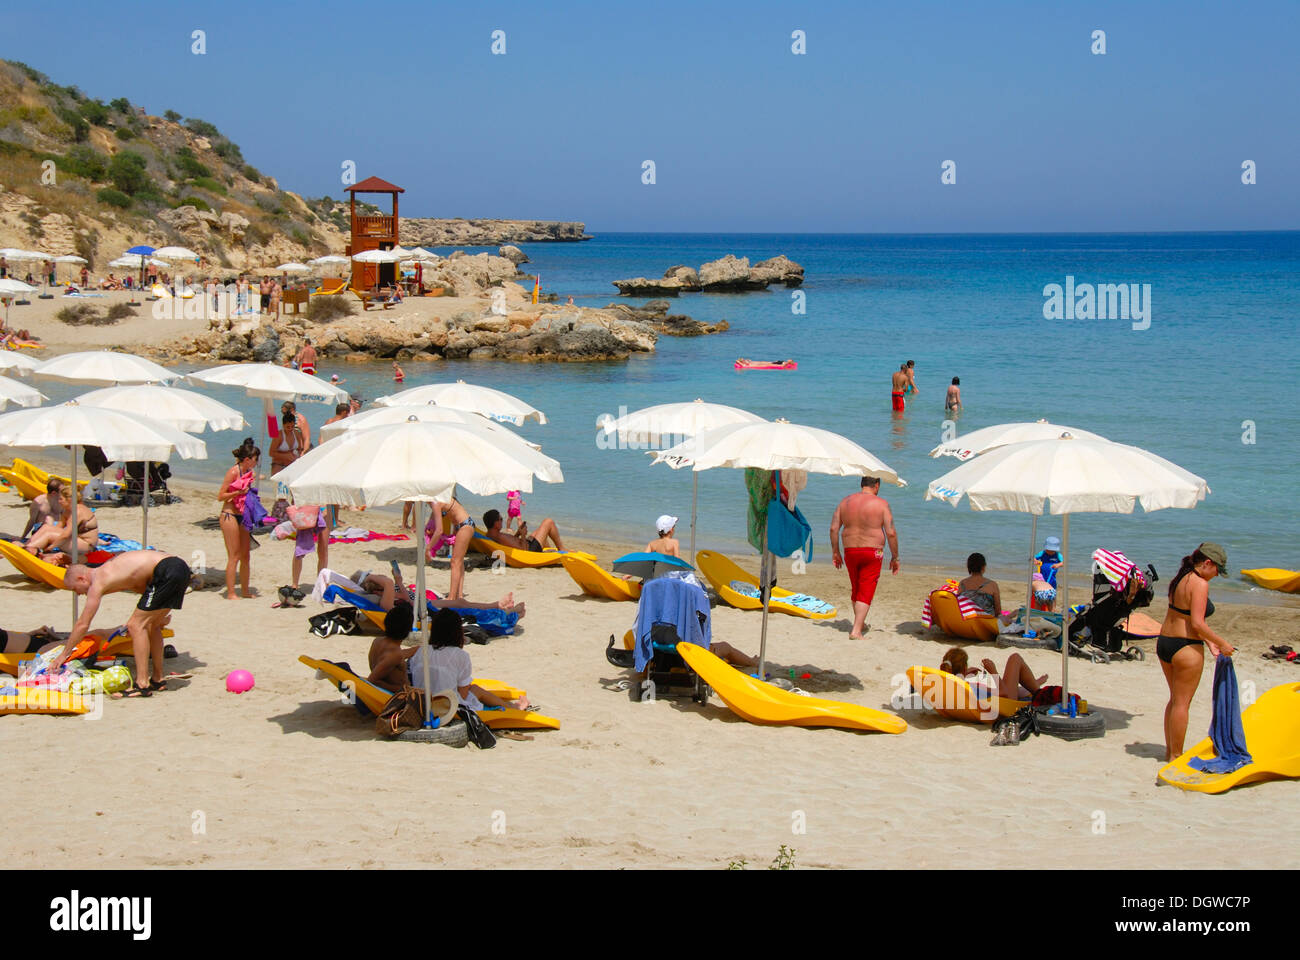 Vacances, plage, soleil et piscine, bleu de la mer, la baie de Coastal Road, Cape Greco, près d'Ayia Napa, le sud de Chypre, République de Chypre Banque D'Images